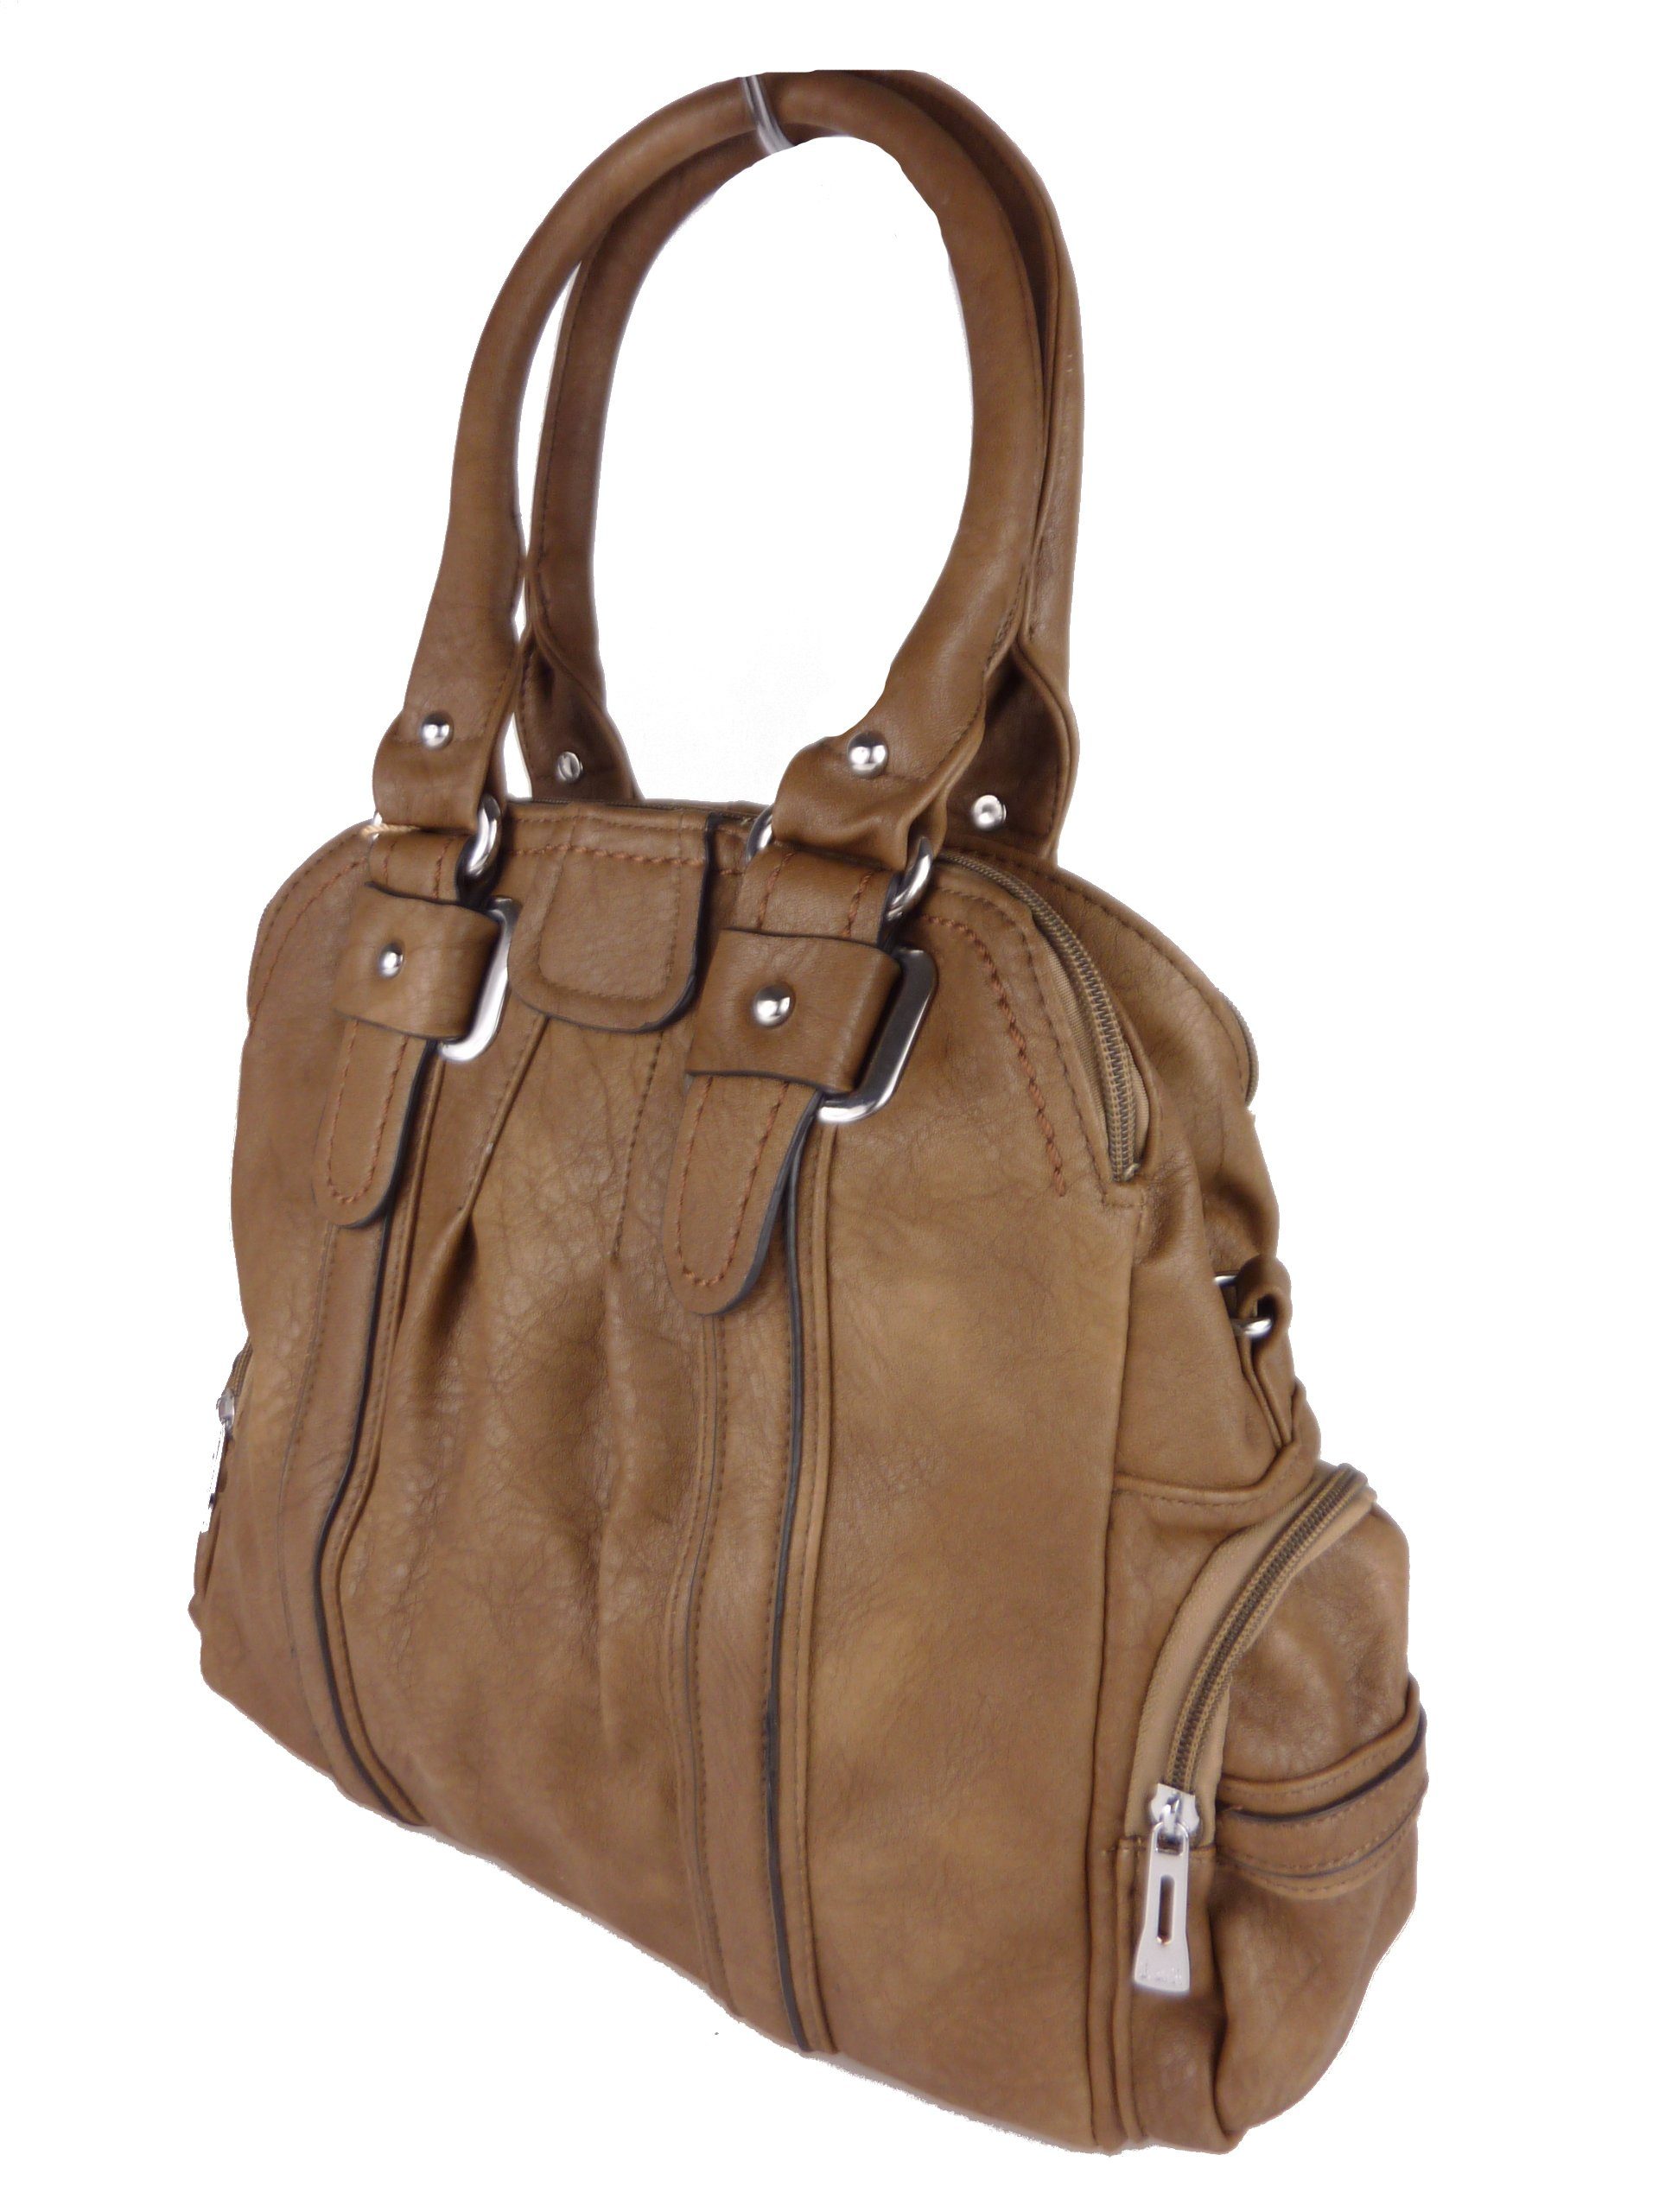 mud Handtasche Taschen4life color sportlich, & Schulterriemen, mit langen Tote Handtasche & Tragegriffen hobo elegant bag, T25 Schultertasche, klassiche